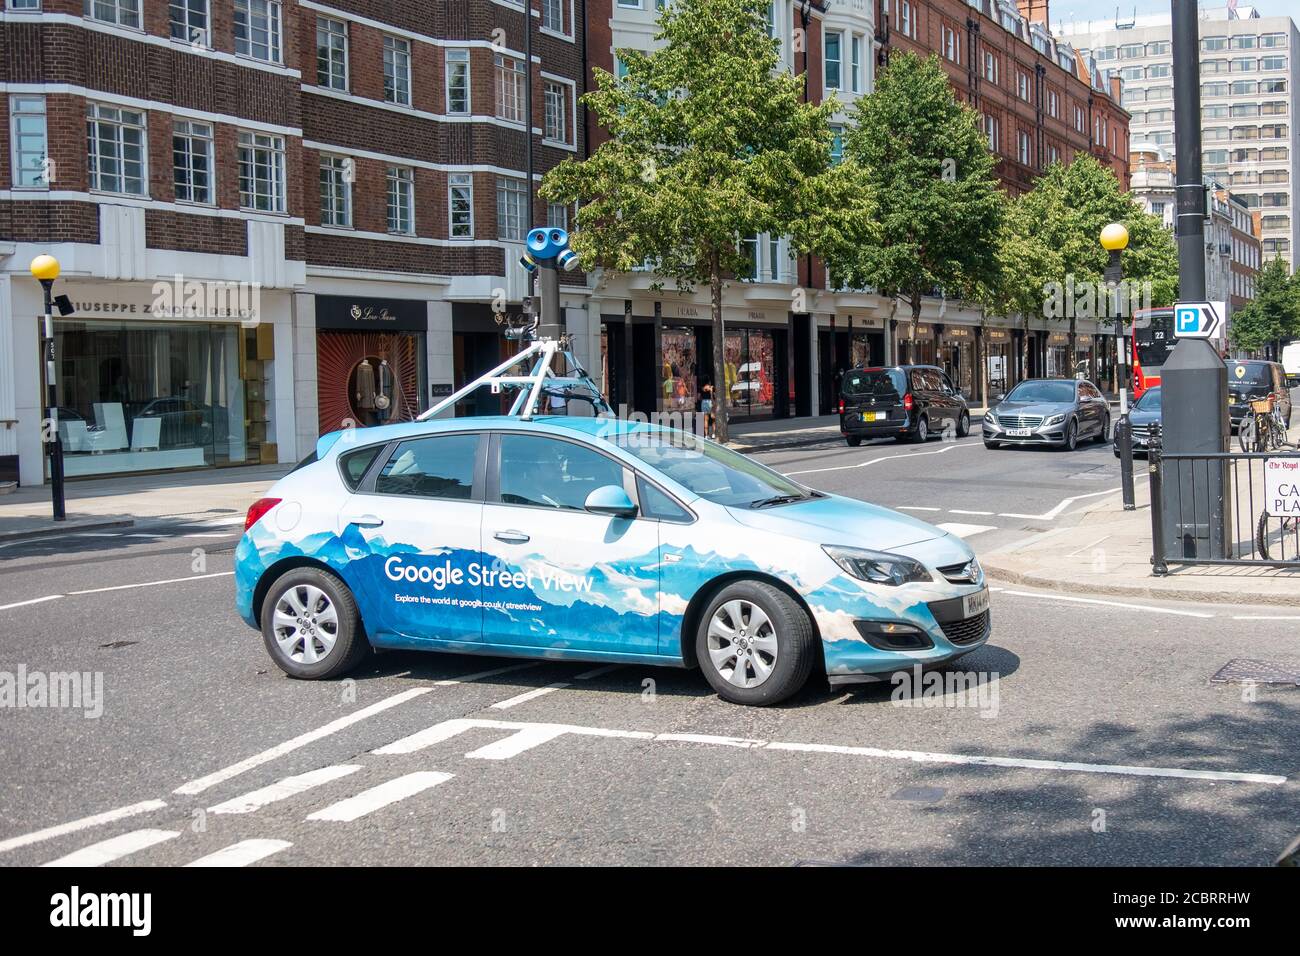 LONDRA- UN automobile di Google Street View in una mappatura di azione Le strade di Londra Foto Stock